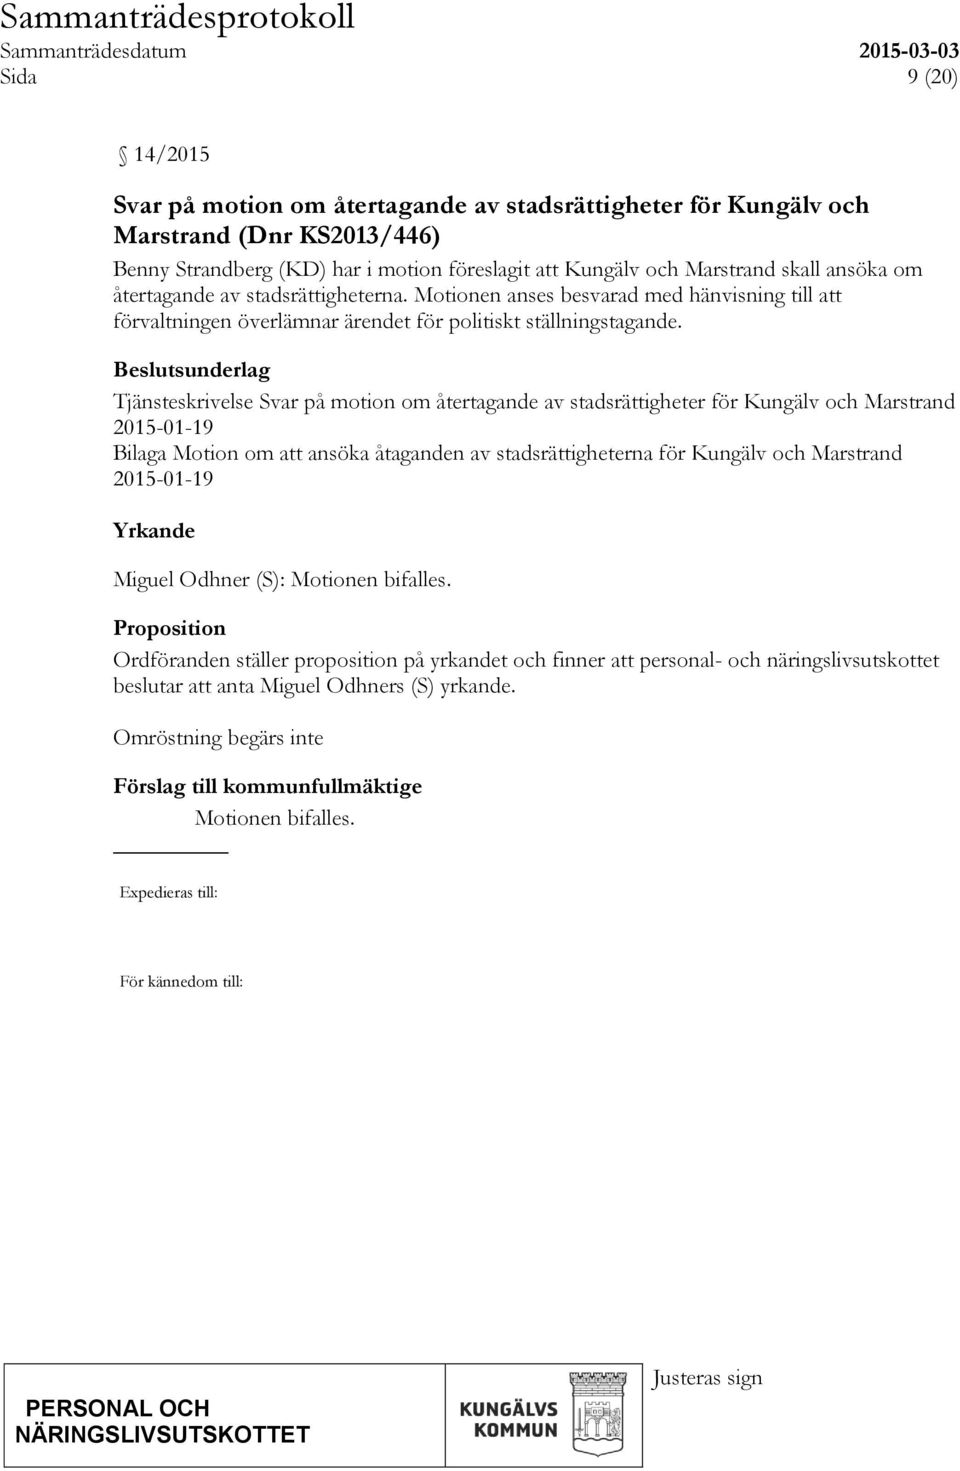 Beslutsunderlag Tjänsteskrivelse Svar på motion om återtagande av stadsrättigheter för Kungälv och Marstrand 2015-01-19 Bilaga Motion om att ansöka åtaganden av stadsrättigheterna för Kungälv och